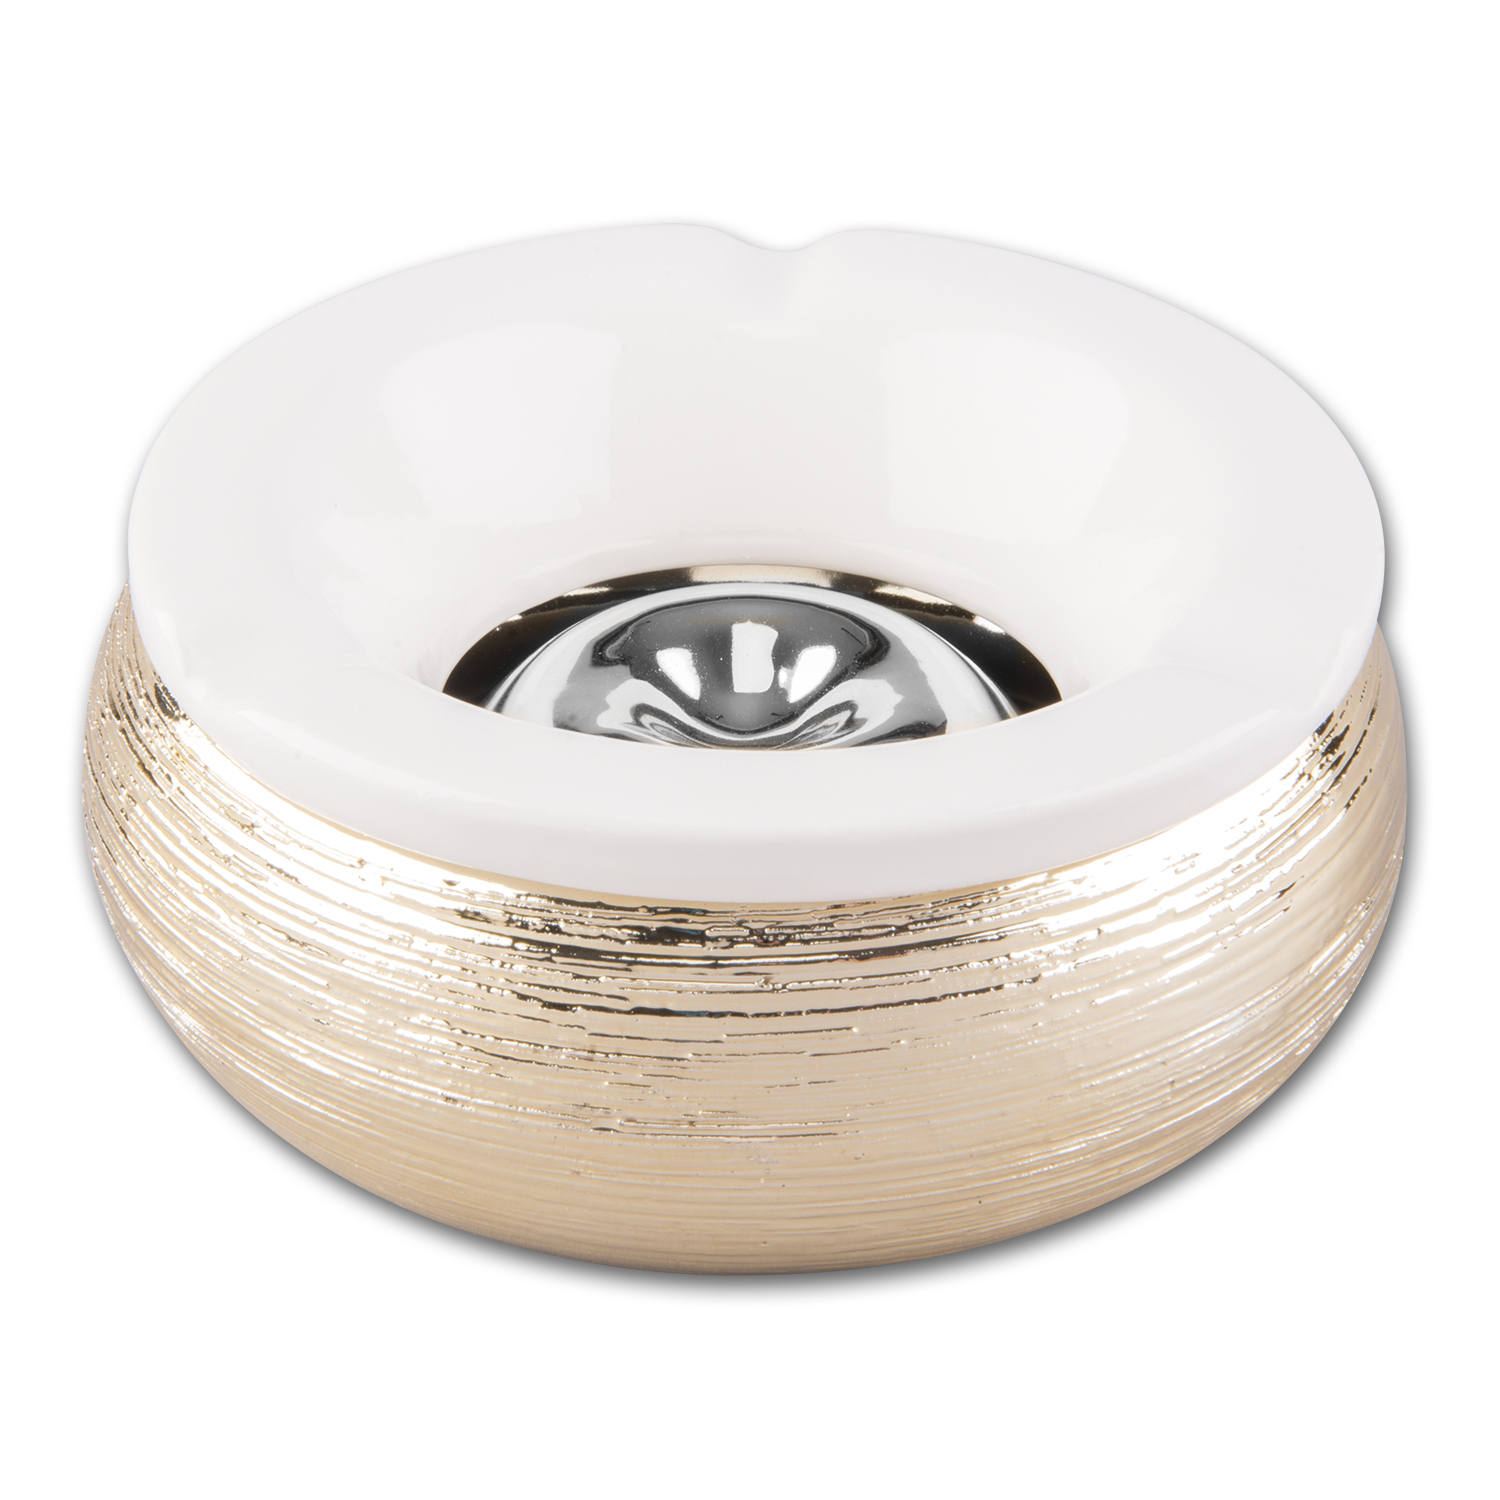 Windascher Keramik Metallstruktur silber Durchmesser 15cm